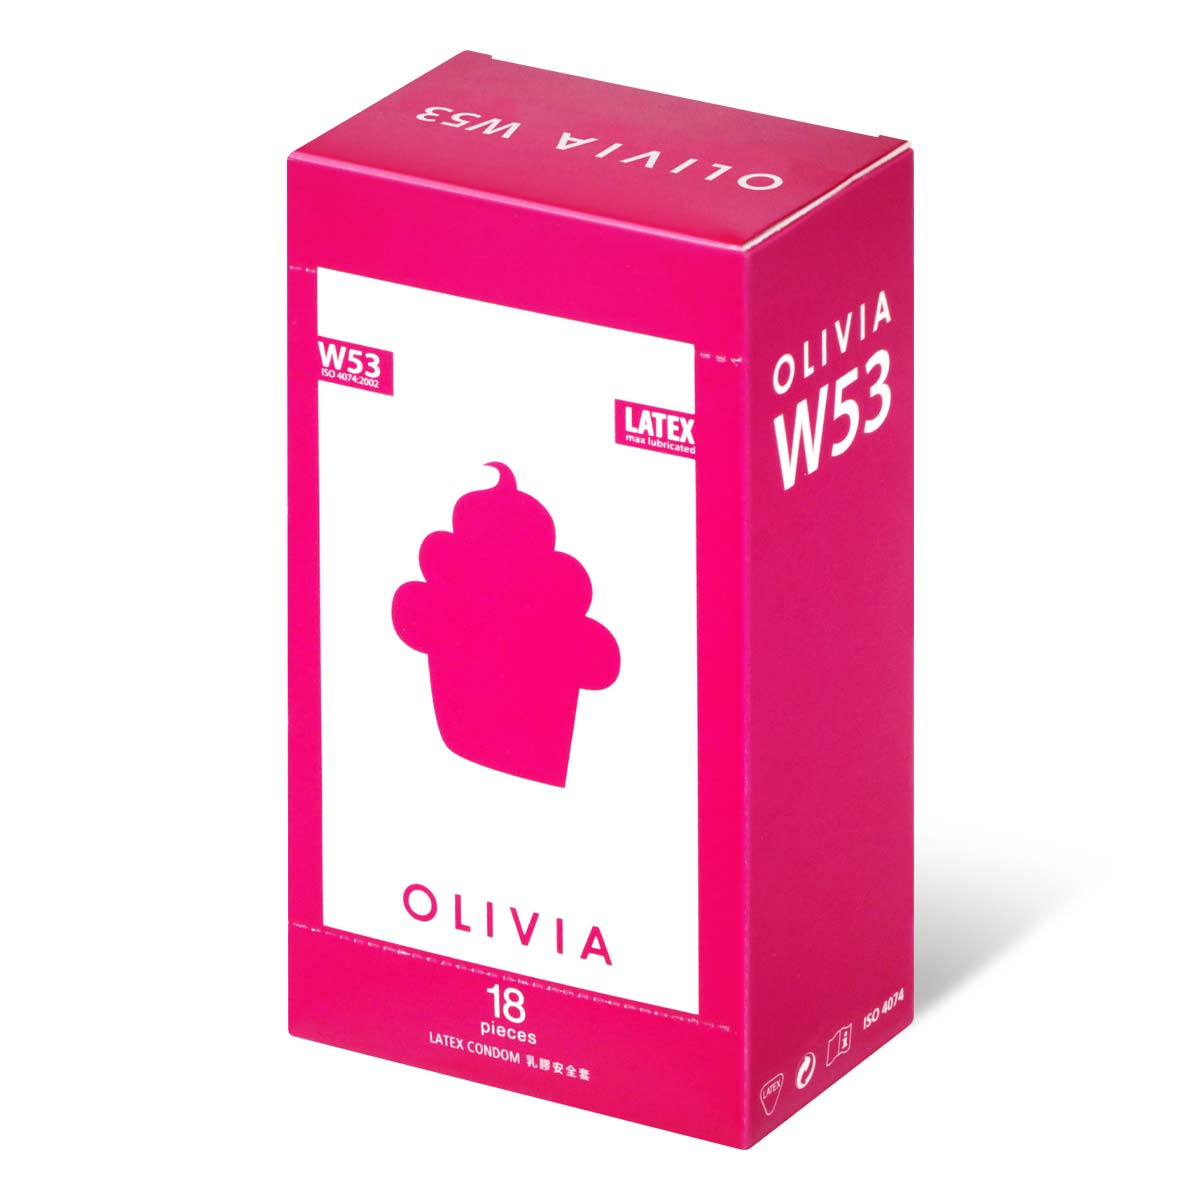 奥莉维亚 W53 系列最多润滑剂型 18 片装 乳胶安全套-p_1